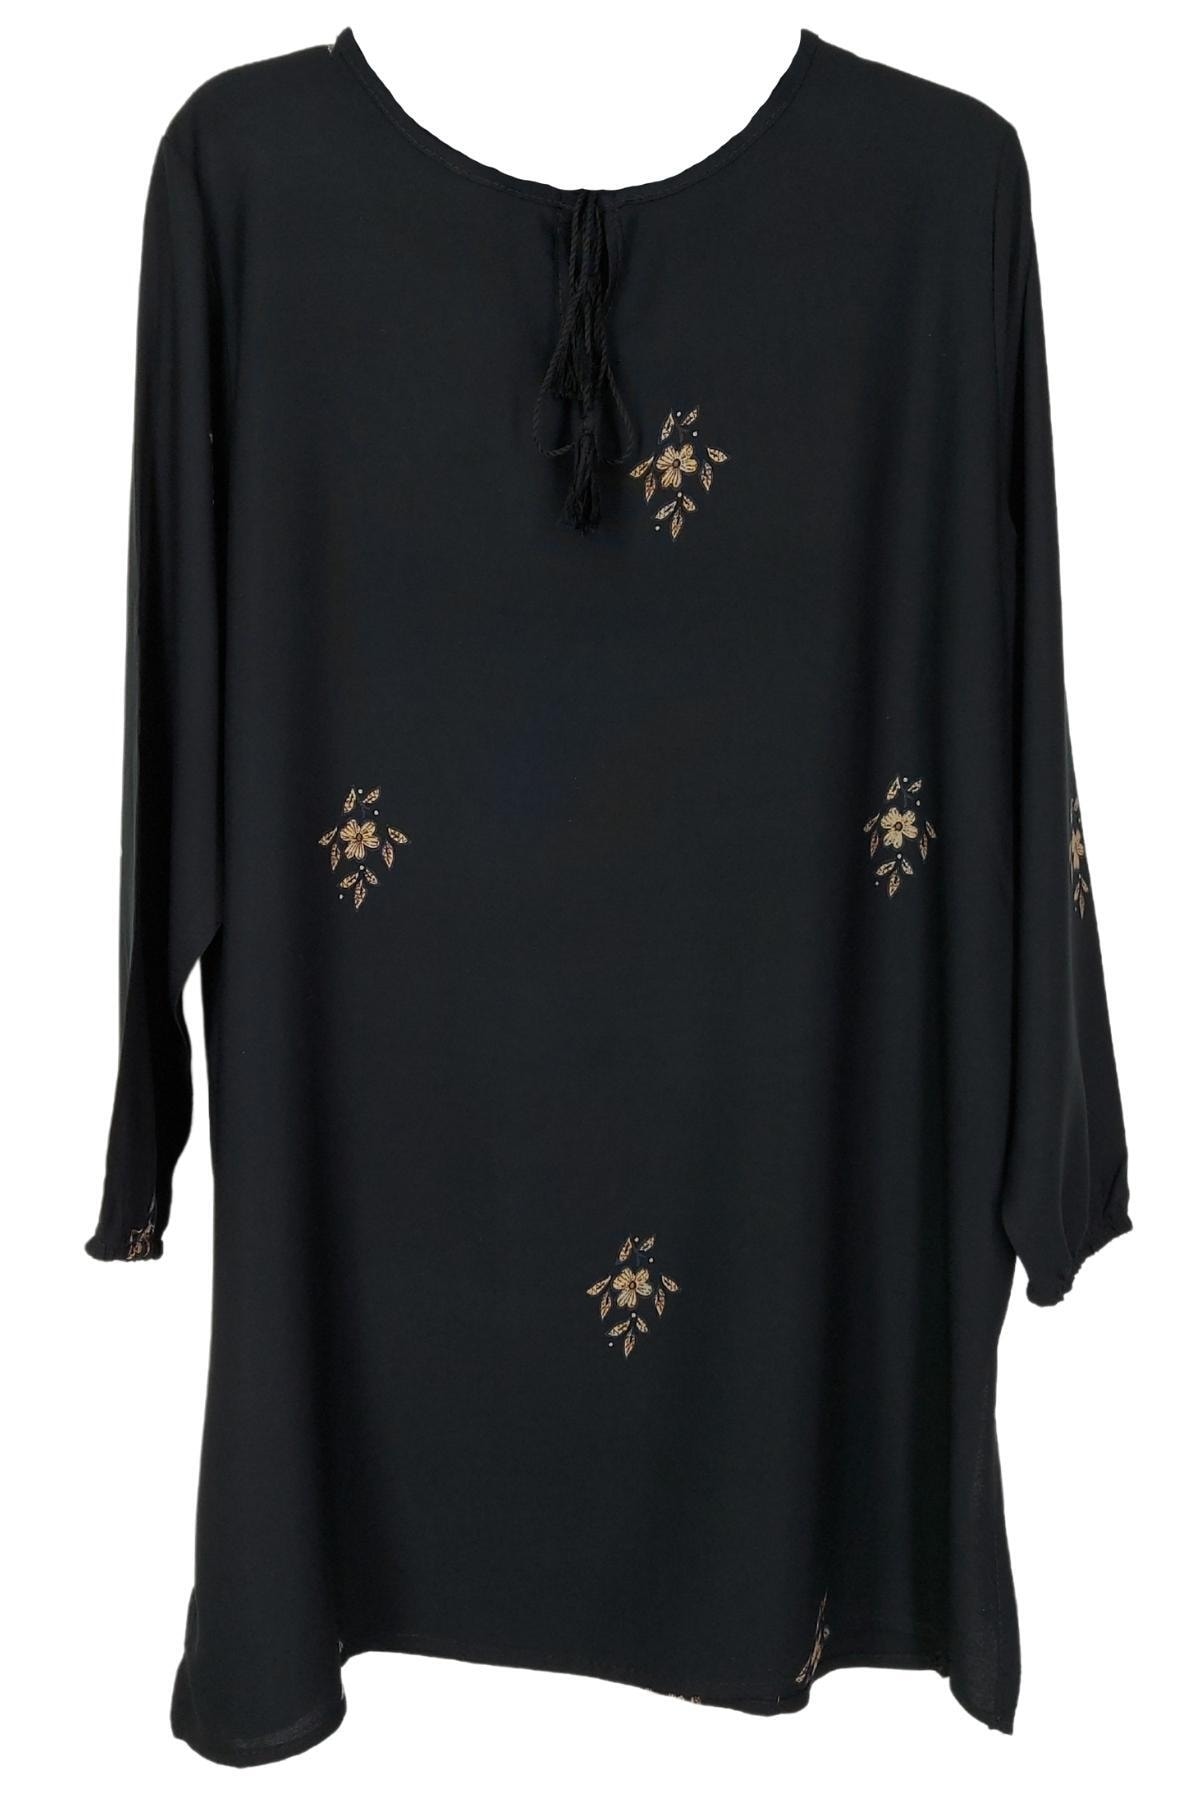 MG Modern Giyin Kadın Siyah Renk Desenli Büyük Beden Tunik